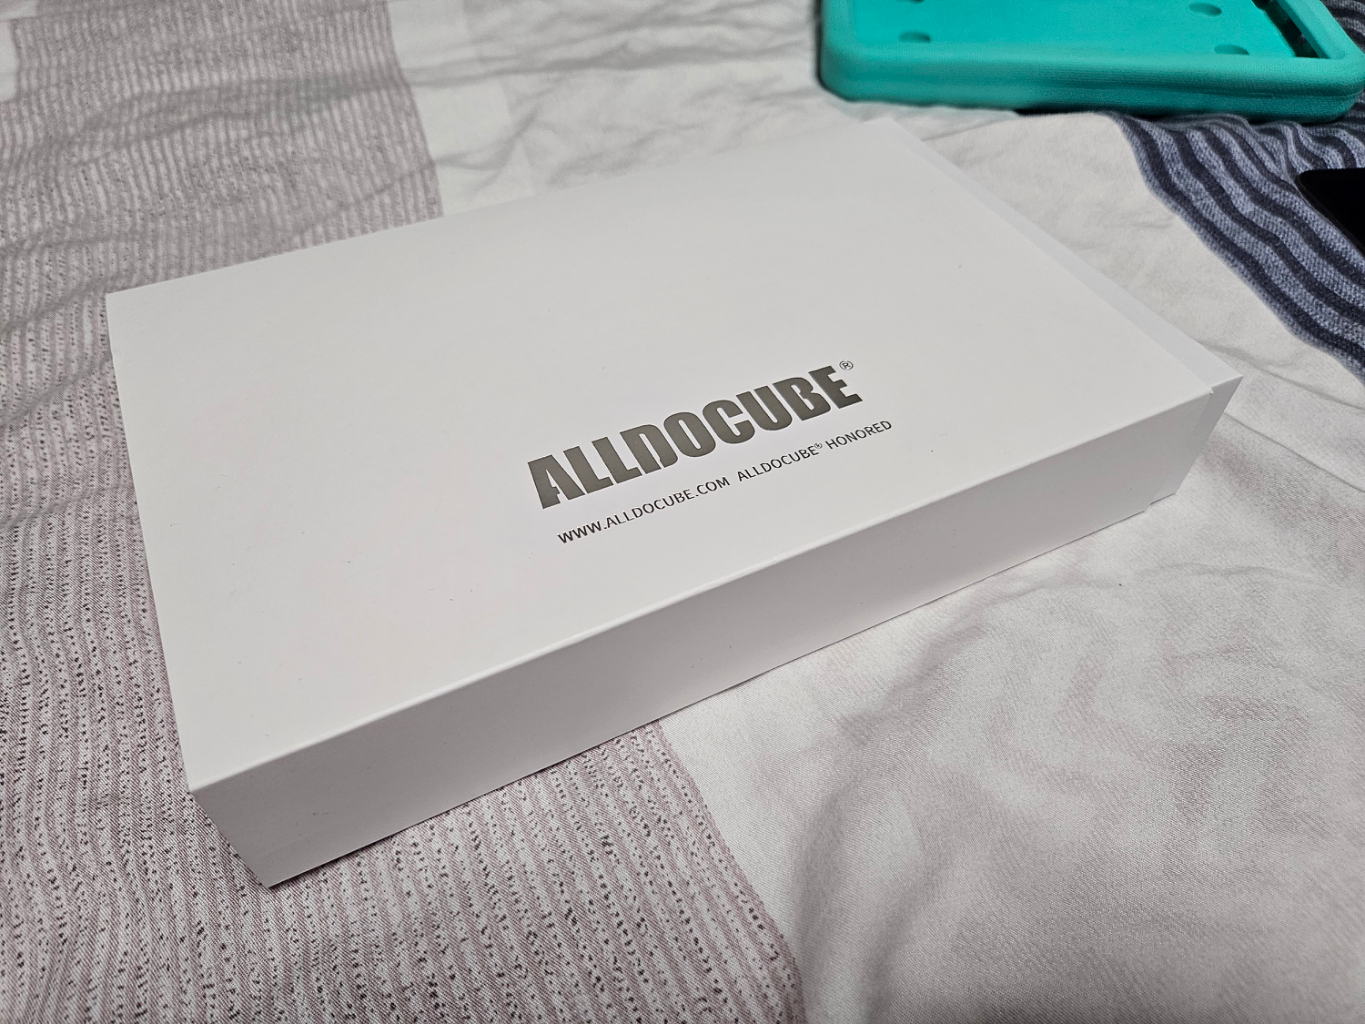 alldocube iplay50mini pro 태블릿